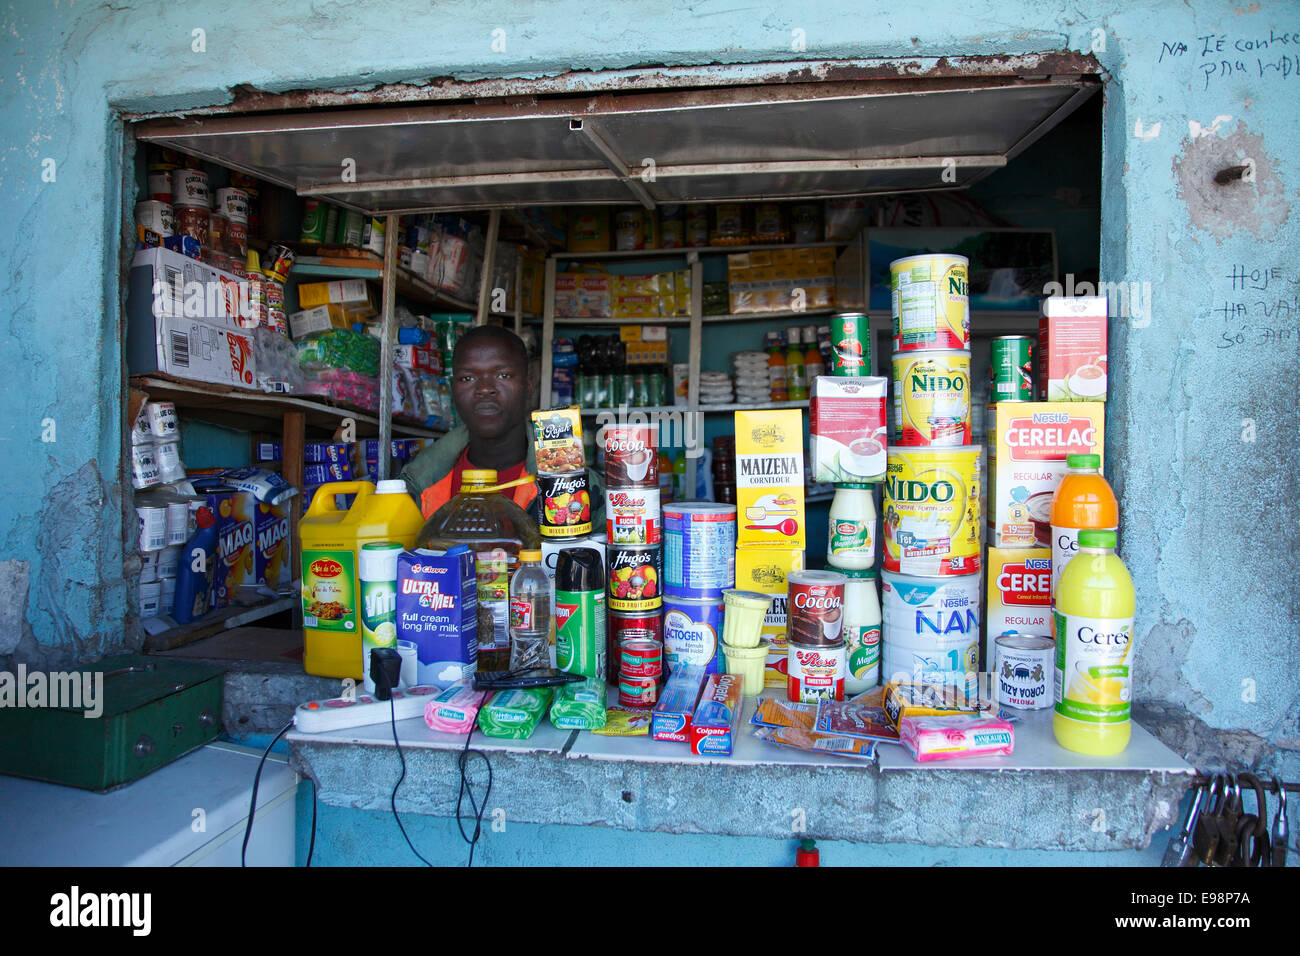 Kekse und importierte Lebensmittel waren zum Verkauf auf dem Markt am Stadtstrand. Beira, Mosambik.  (Foto - Zute Lightfoot) Stockfoto